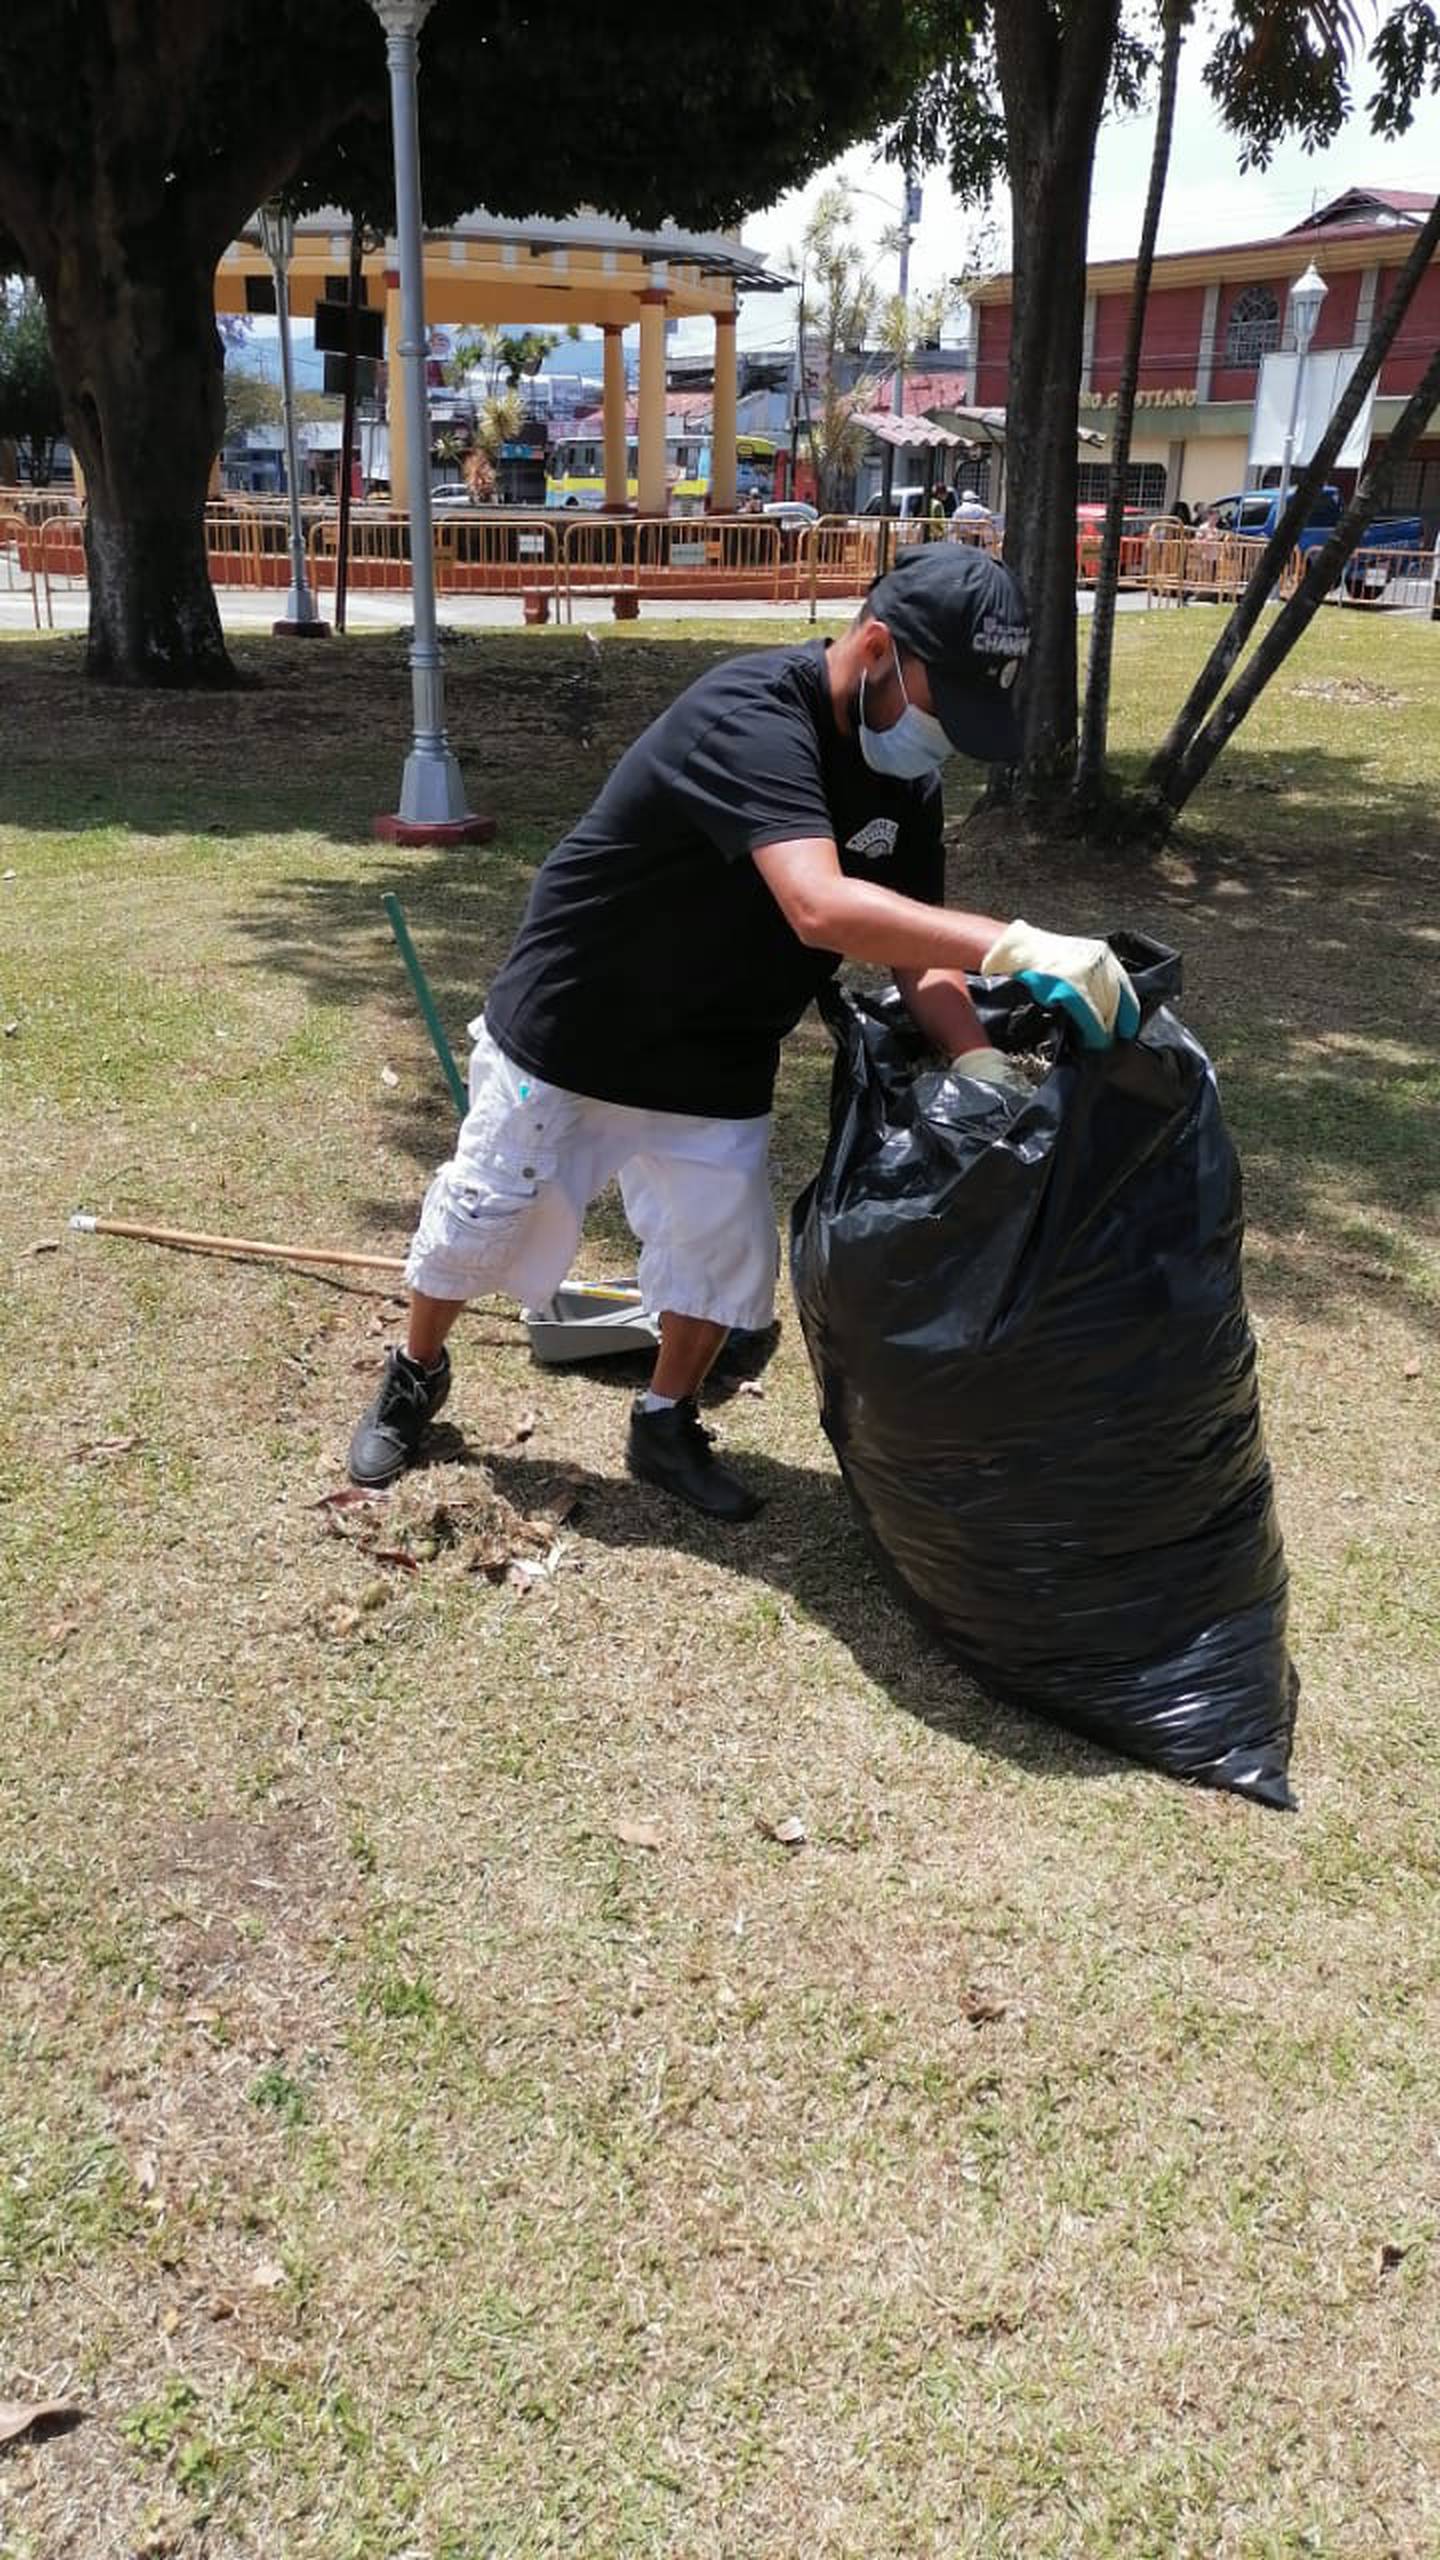 Personas que viven en la indigencia y que asisten a un dormitorio temporal, en el cantón de Goicoechea, están marcando la diferencia al ponerse a limpiar el parque y las calles de su comunidad.